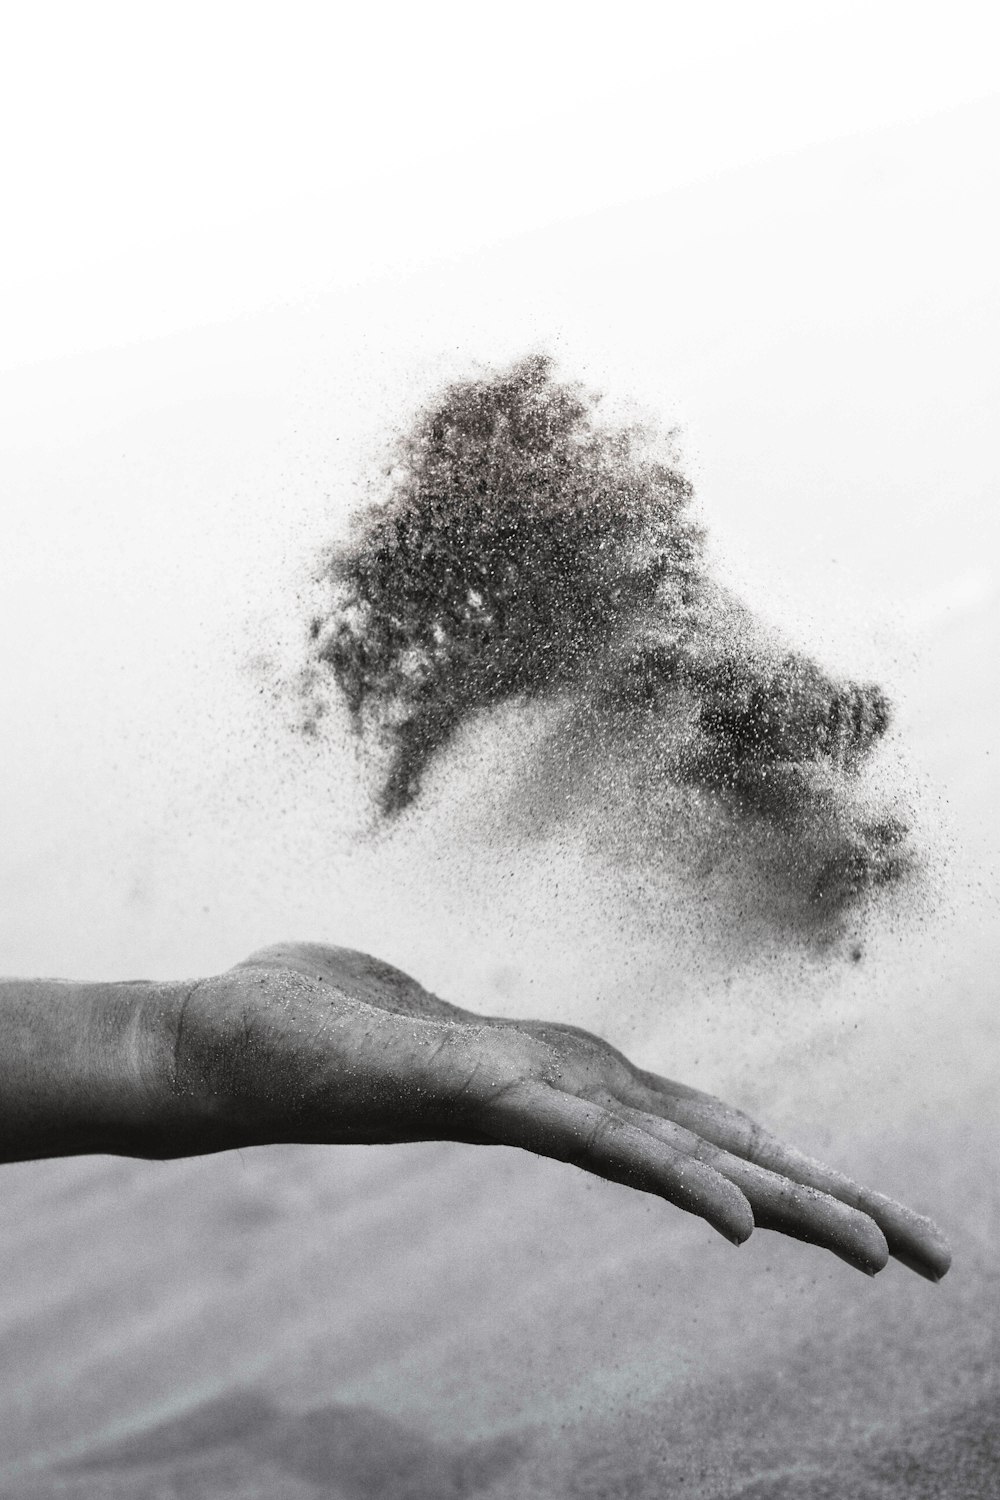 Fotografía en escala de grises de la mano de la persona esparciendo arena